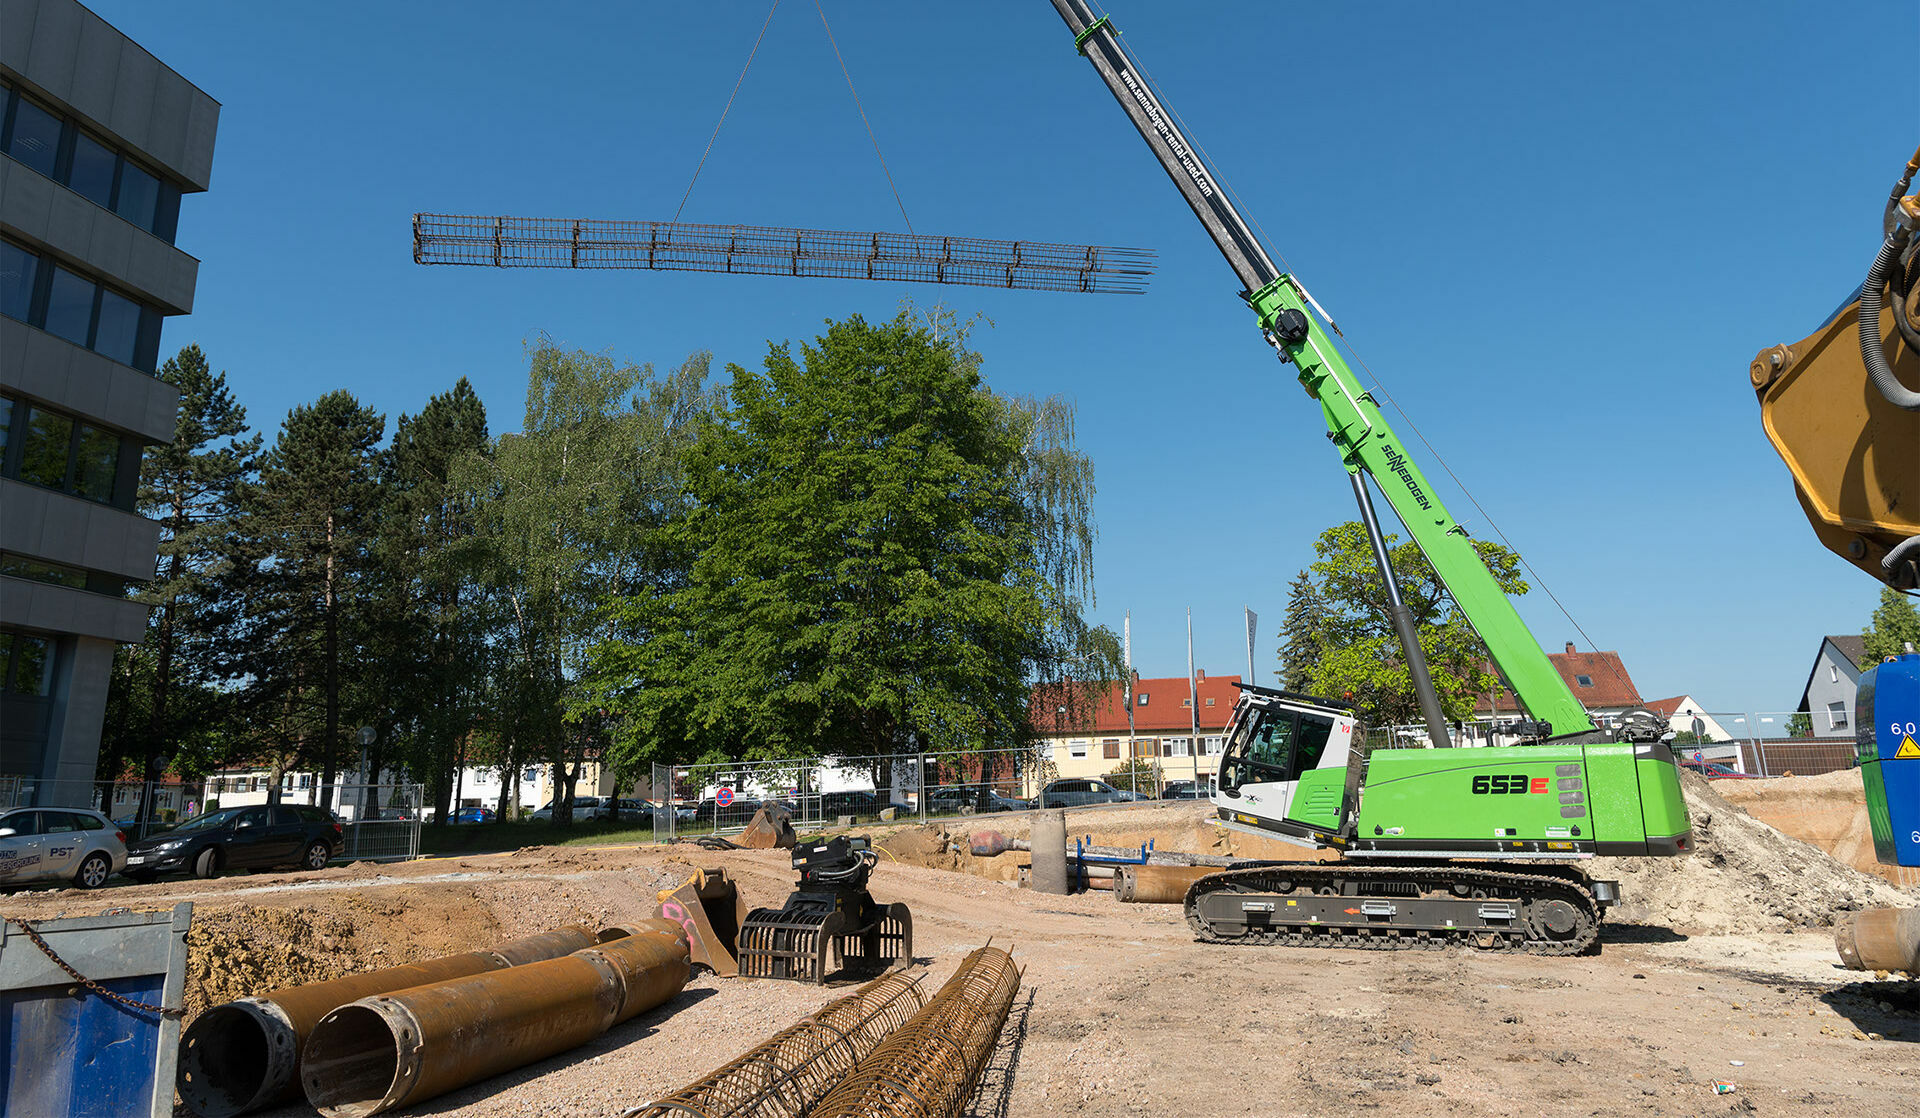 653 E - telescopic crane for structural + civil engineering